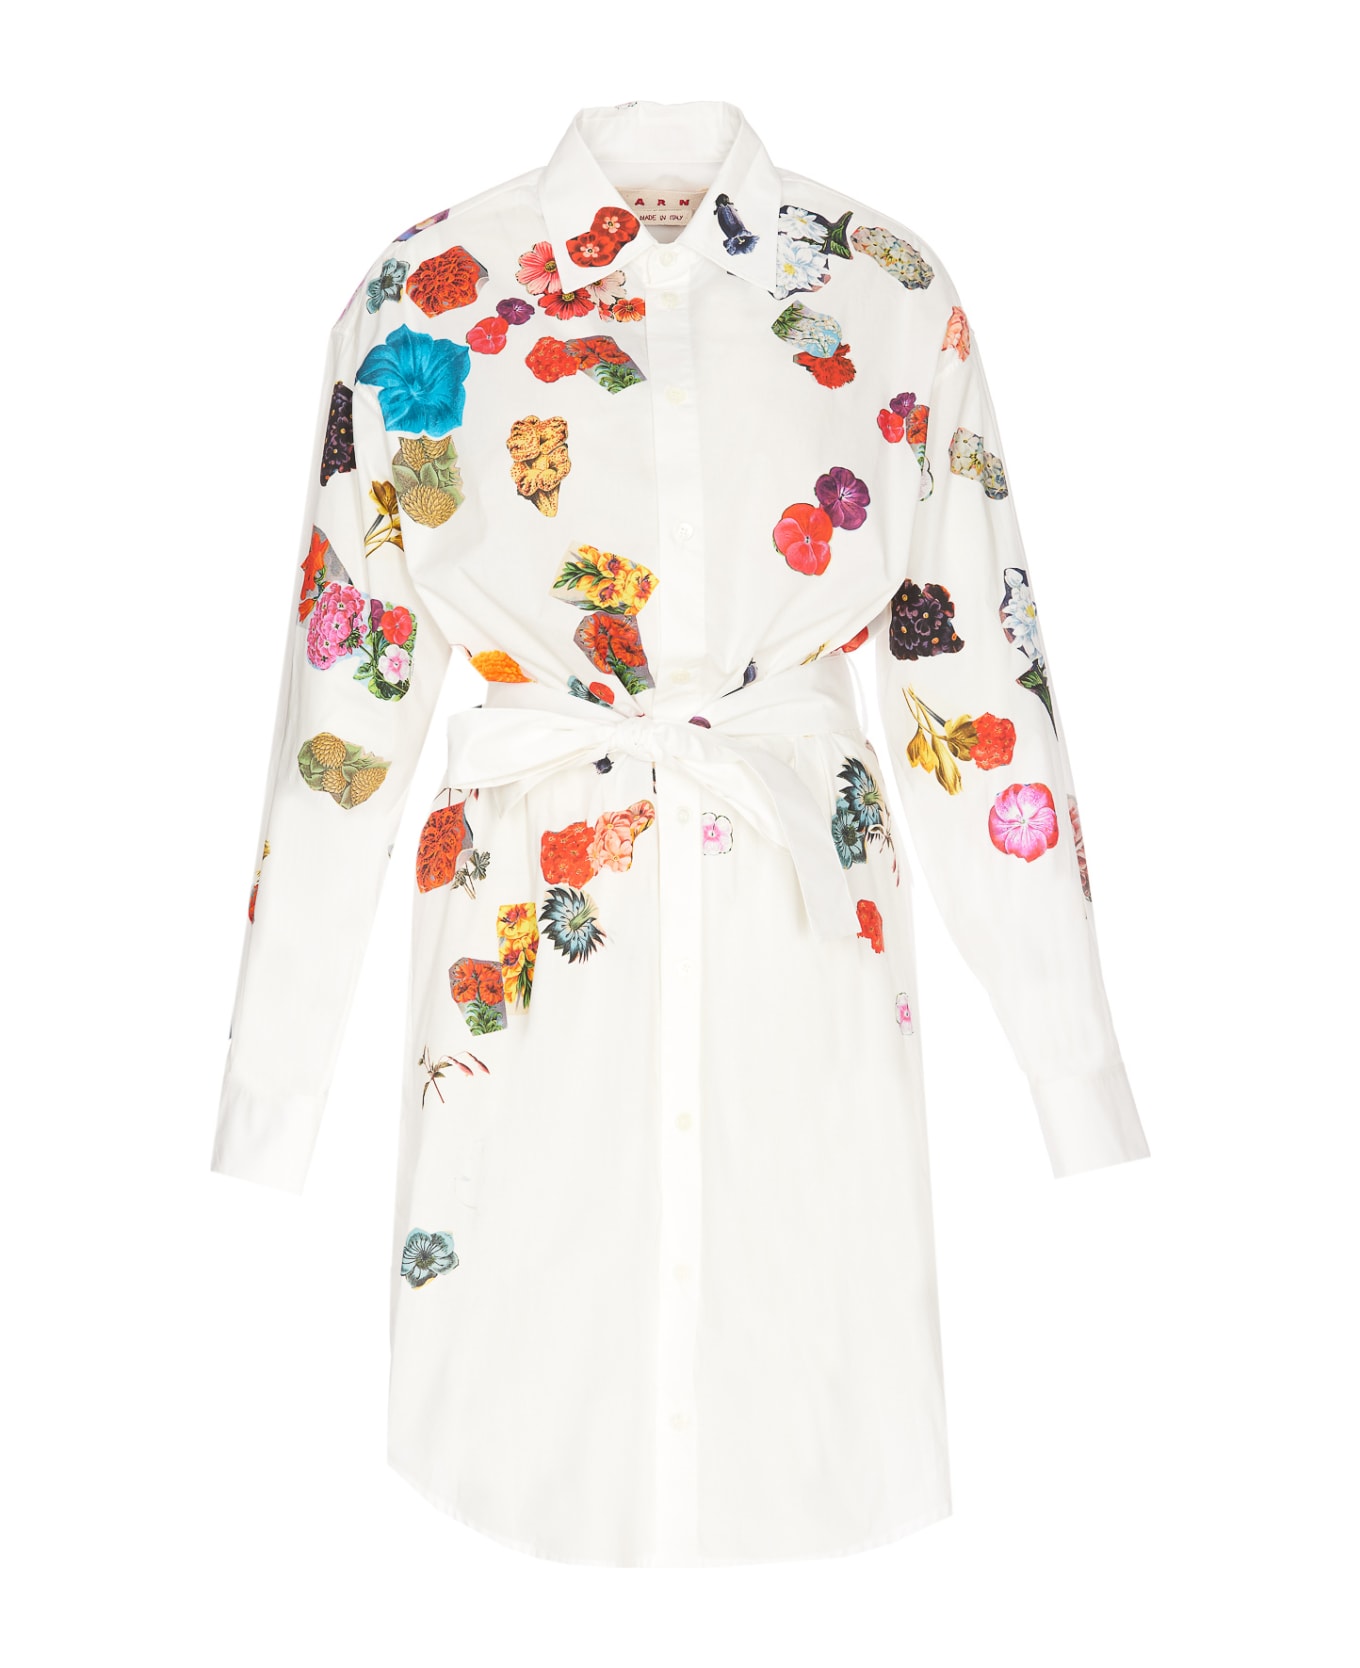 Marni Floral Print Dress - White